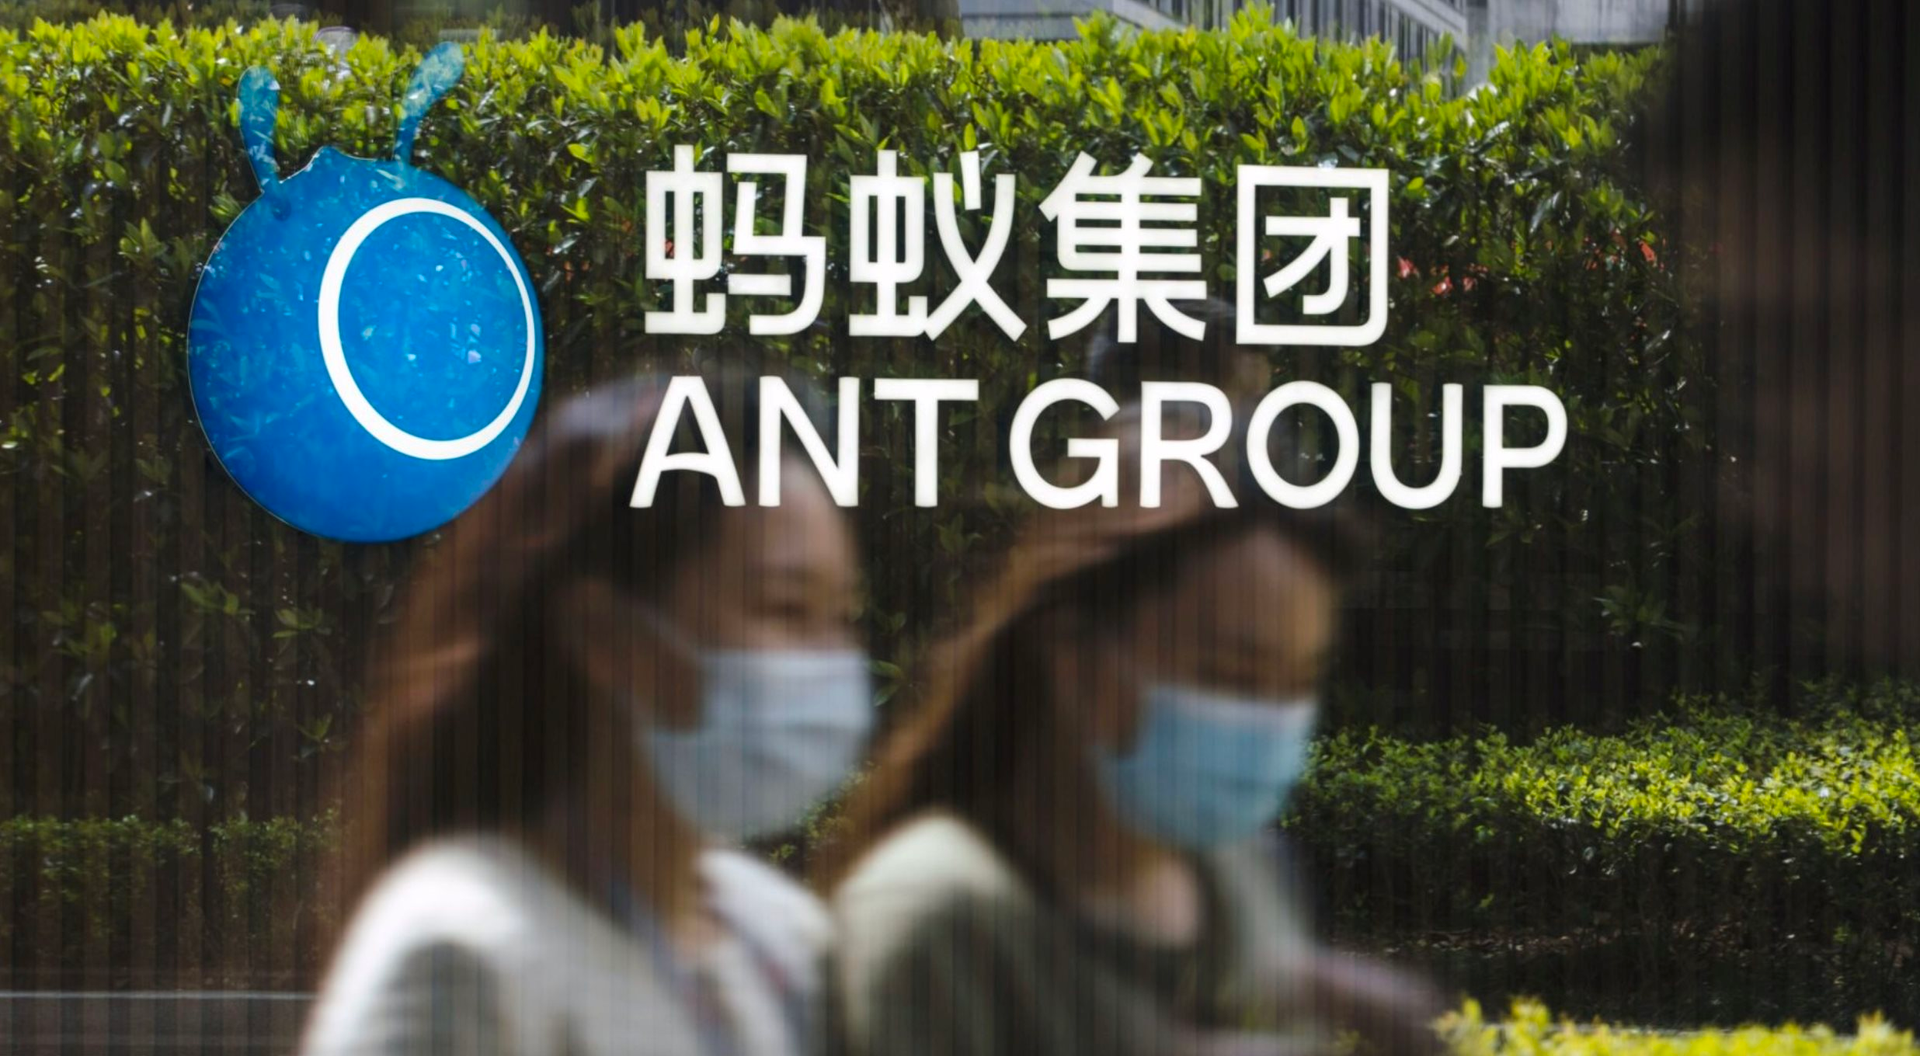 Jack Ma từ bỏ quyền kiểm soát Ant Group, đợt niêm yết gần 300 tỷ đô sắp được tái khởi động? - Ảnh 2.